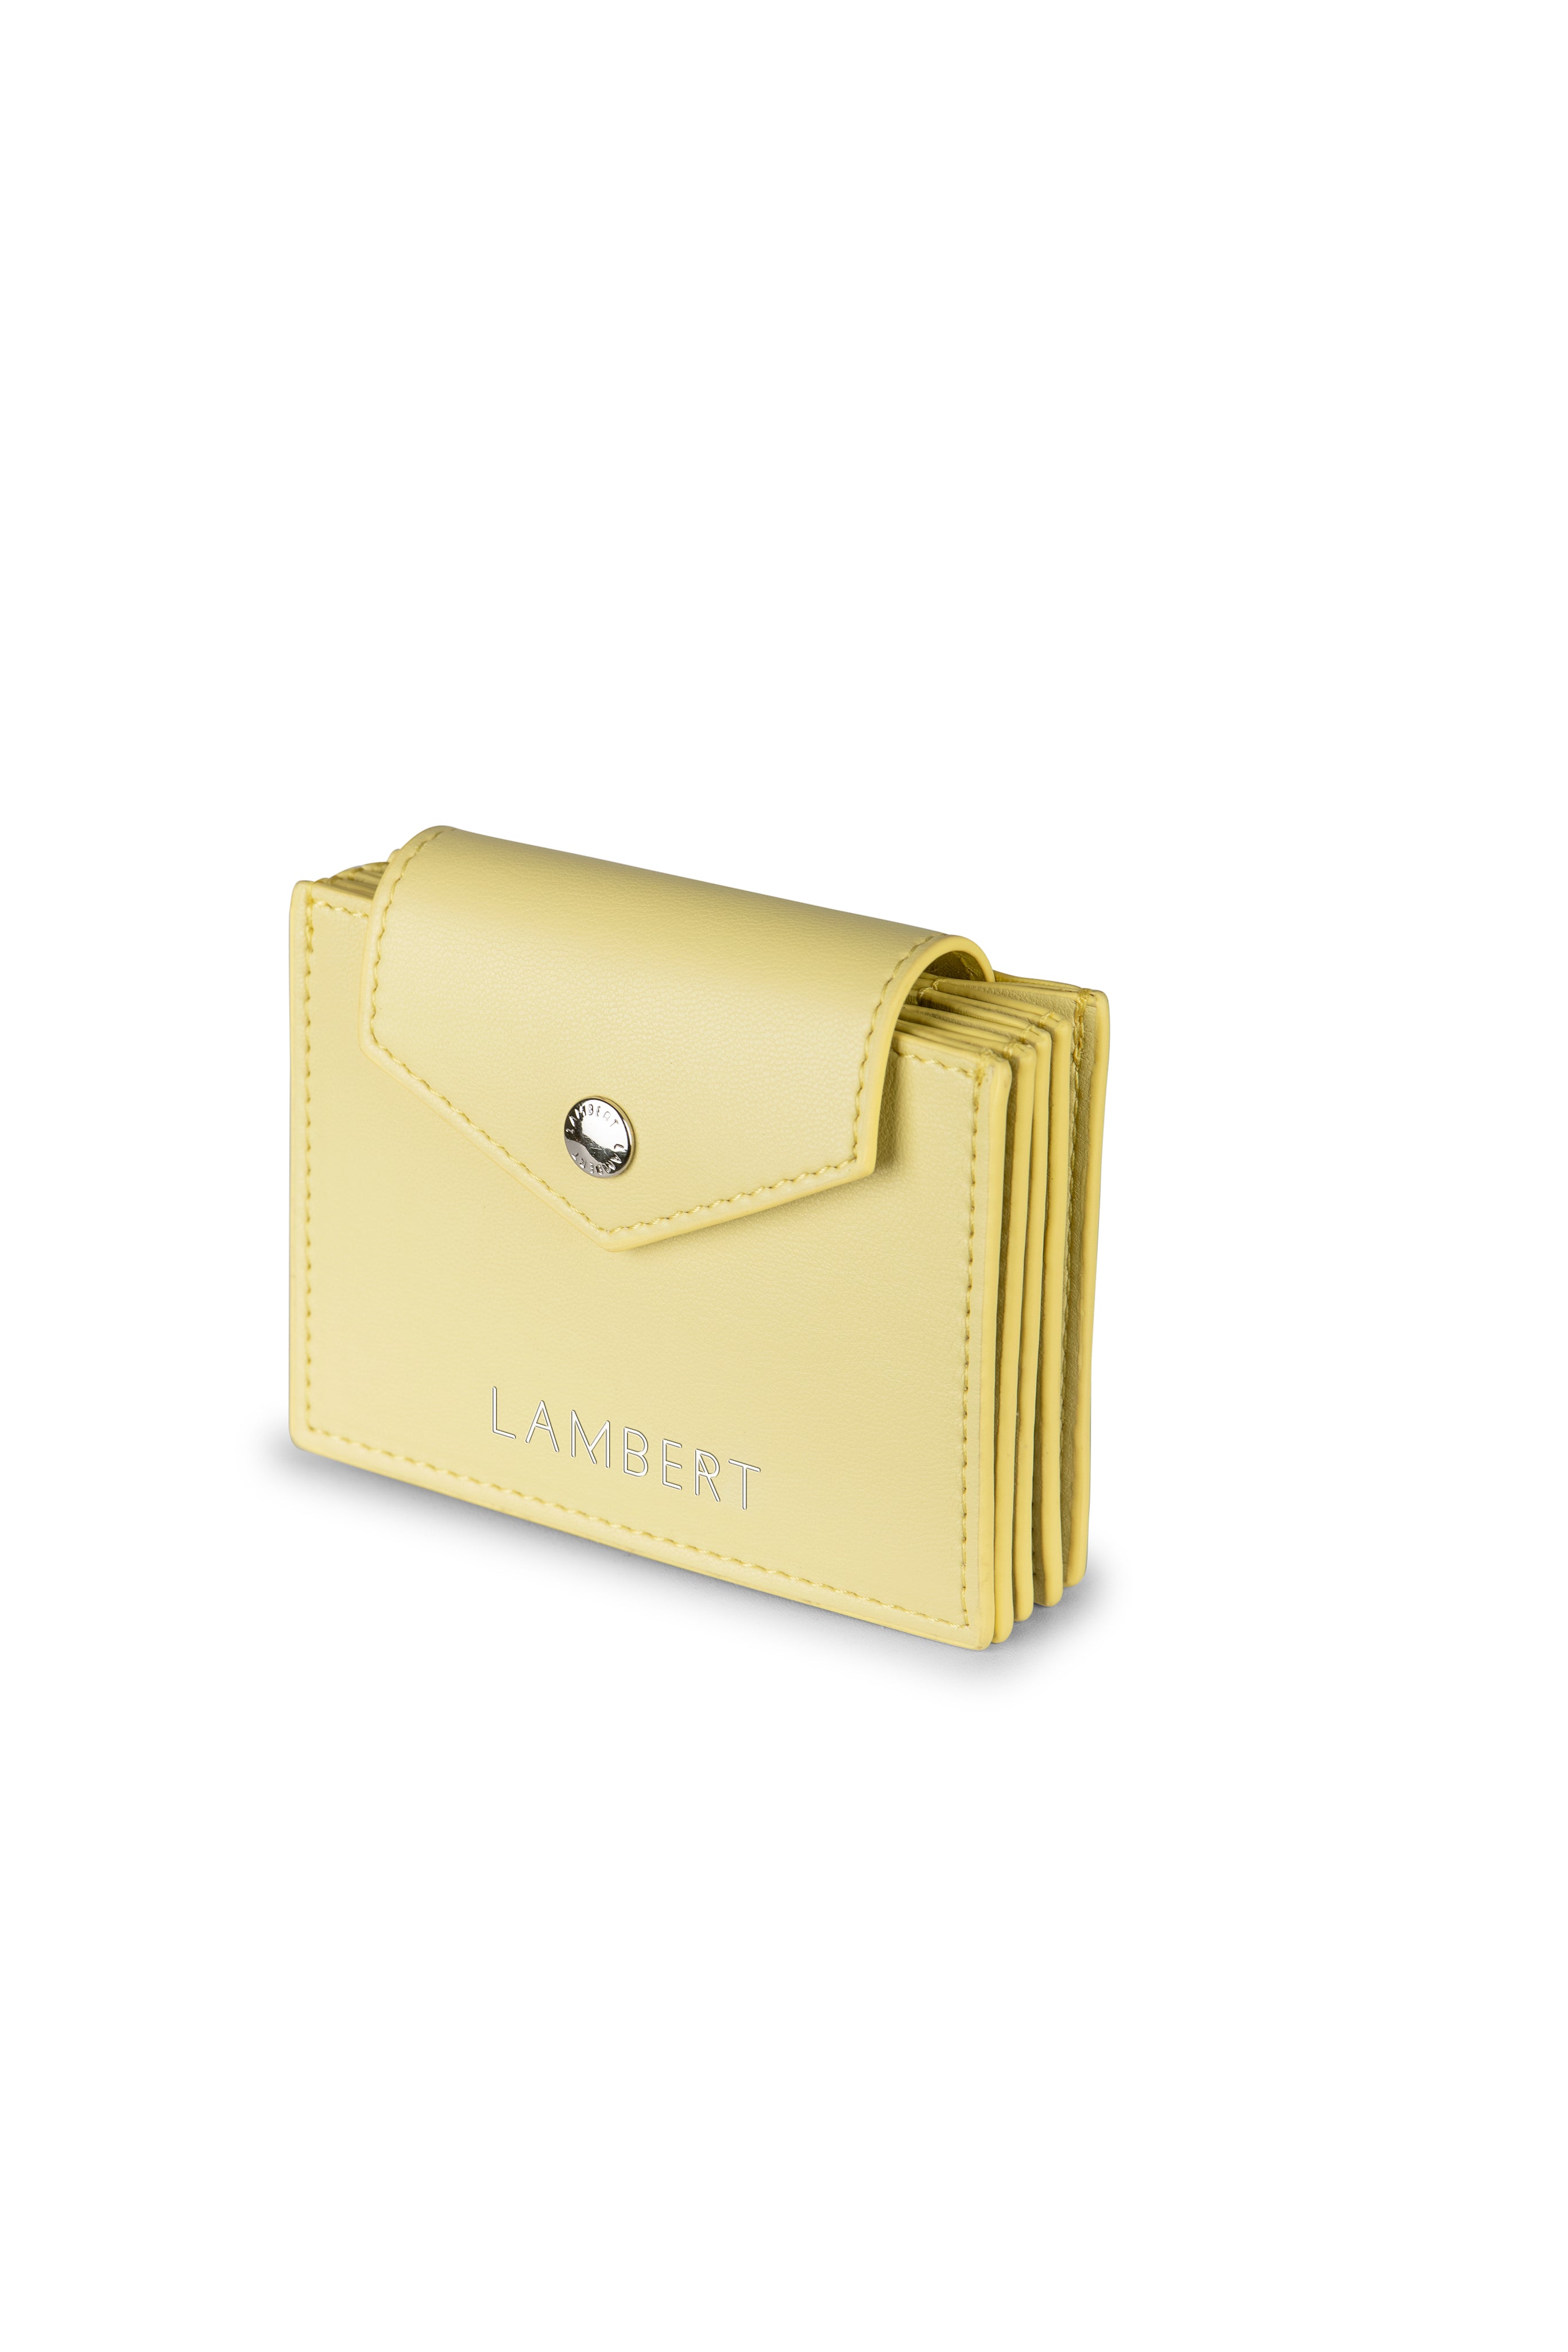 Lambert - Le Jane - Porte-cartes accordéon en cuir végan - Mojito